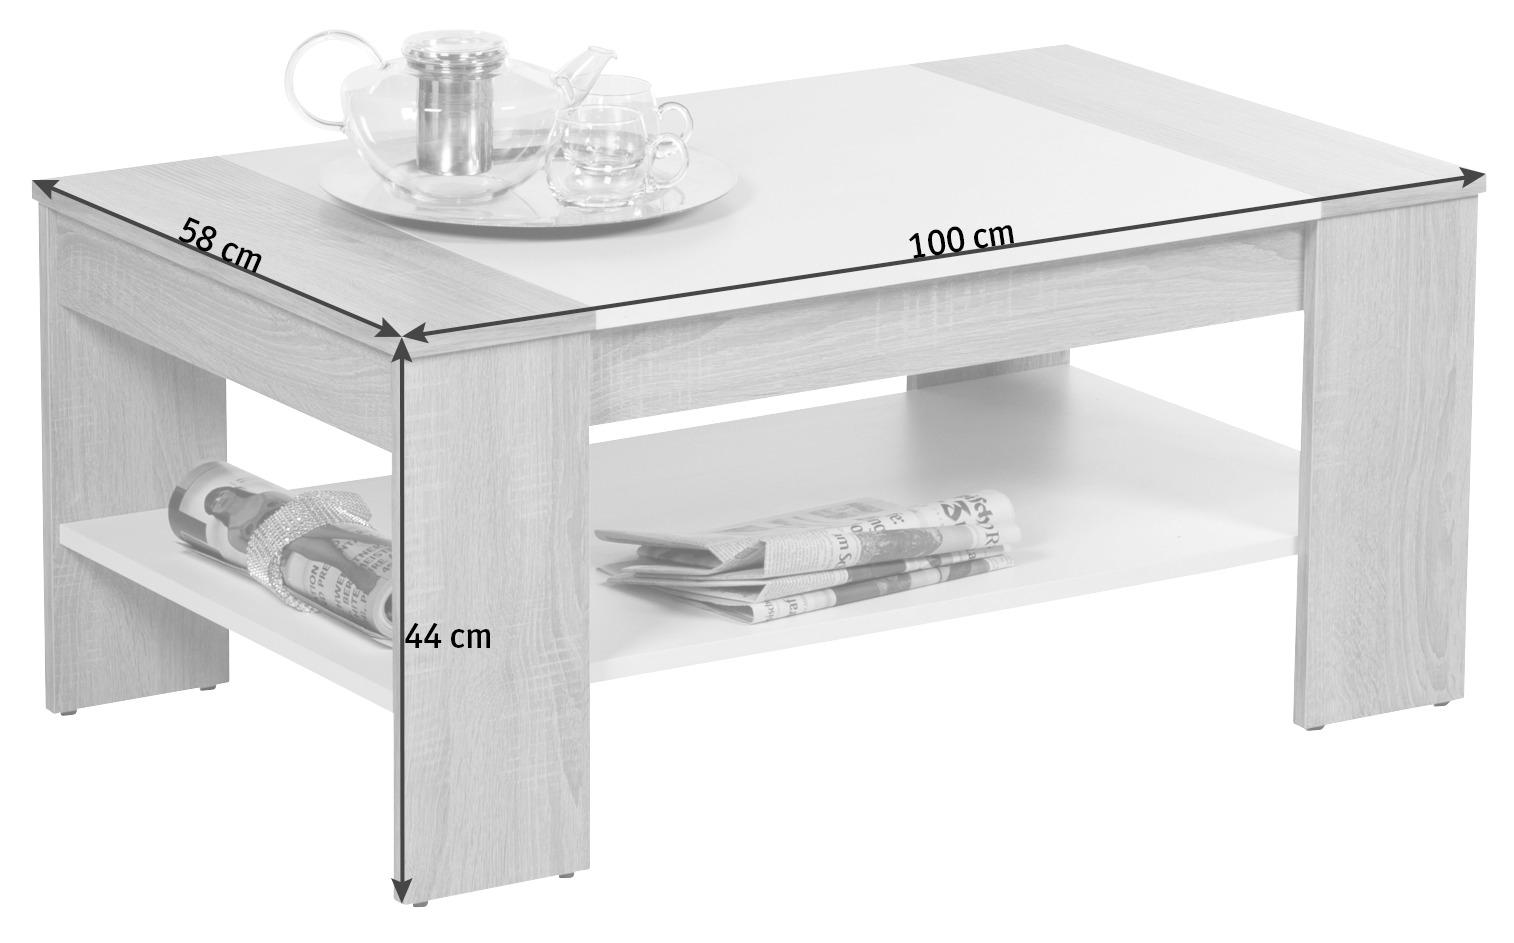 COUCHTISCH rechteckig Weiß, Eichefarben 100/58/44 cm  - Eichefarben/Weiß, Design (100/58/44cm) - Livetastic